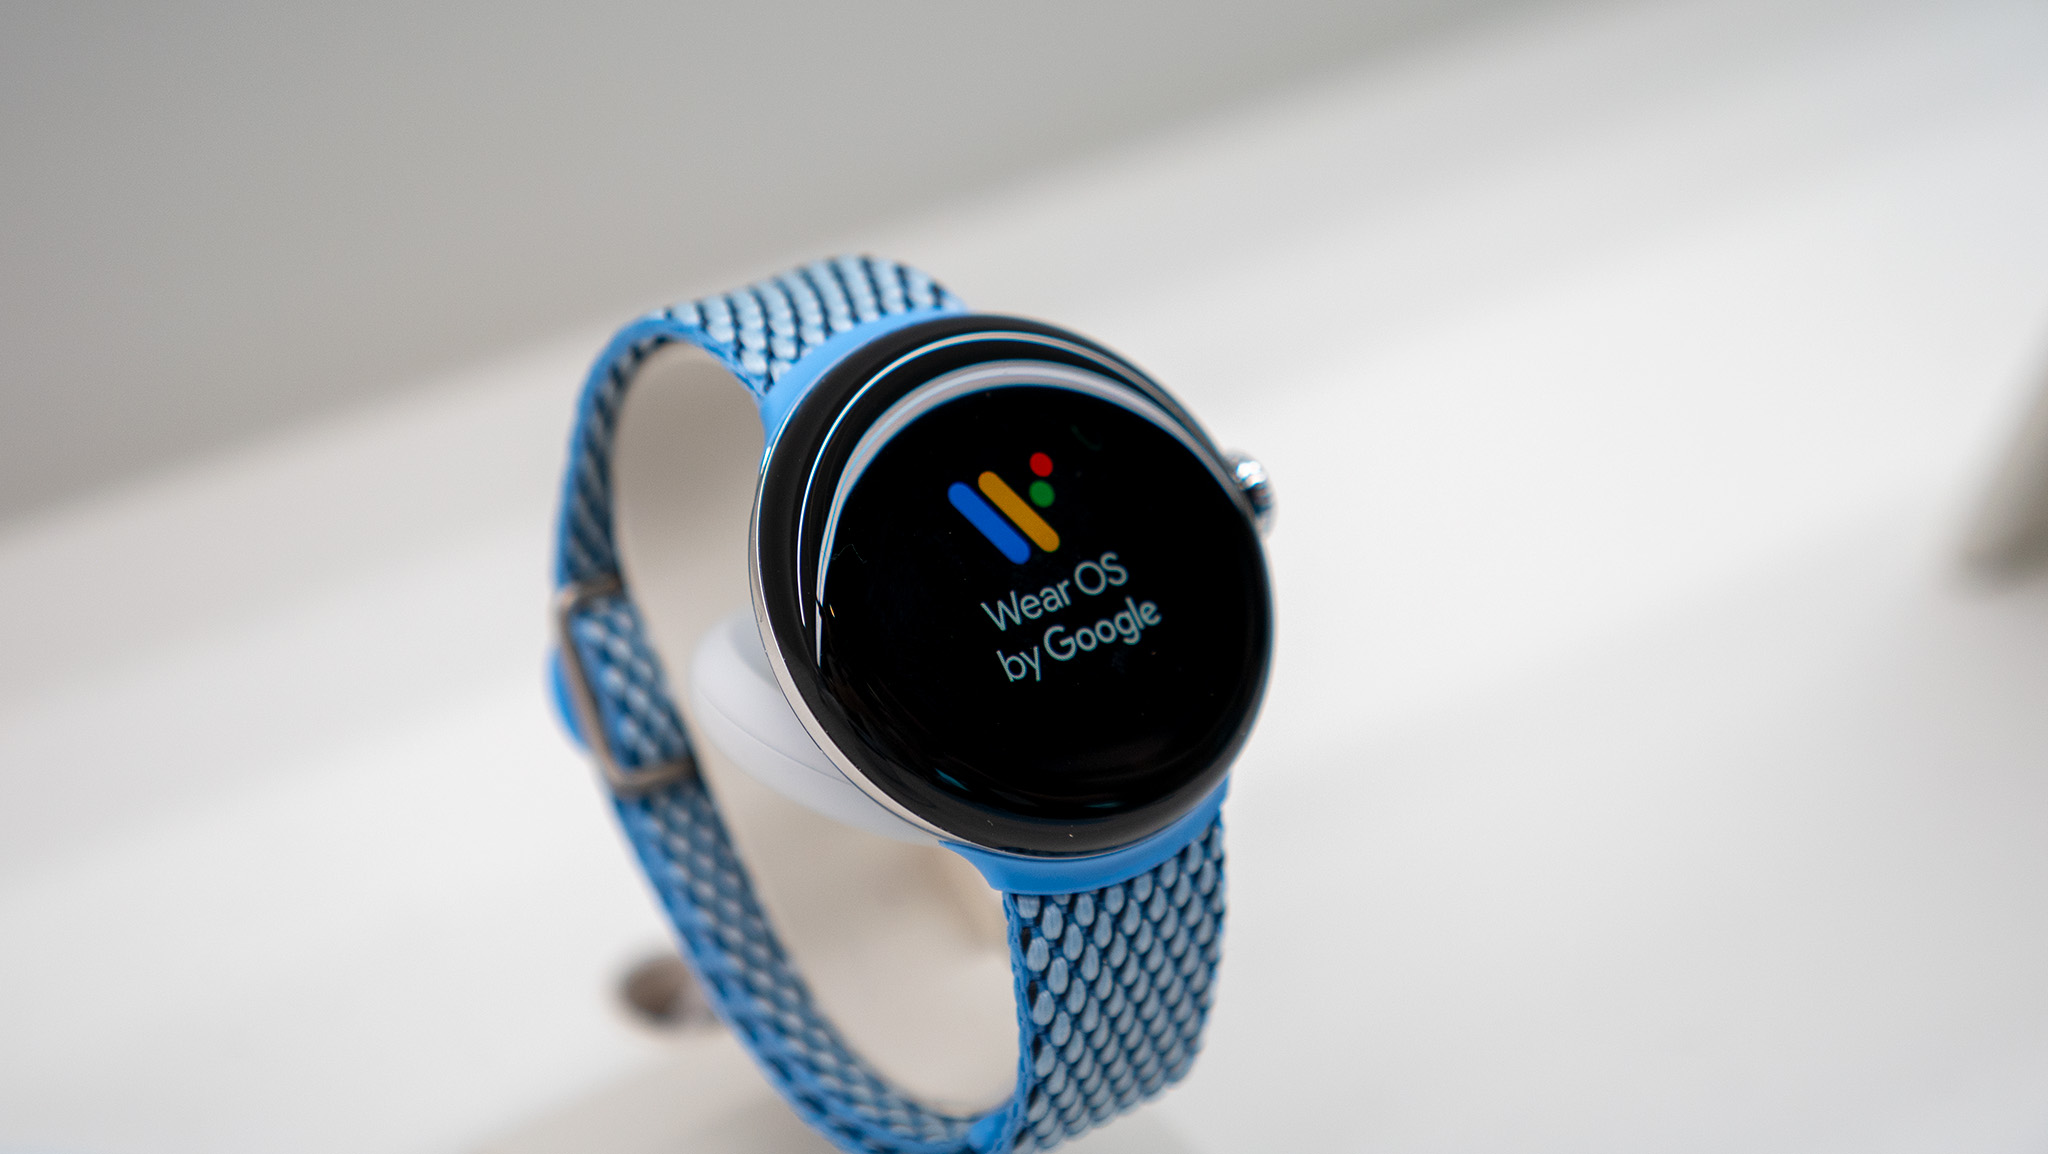 Google Pixel Watch 2 hands-on